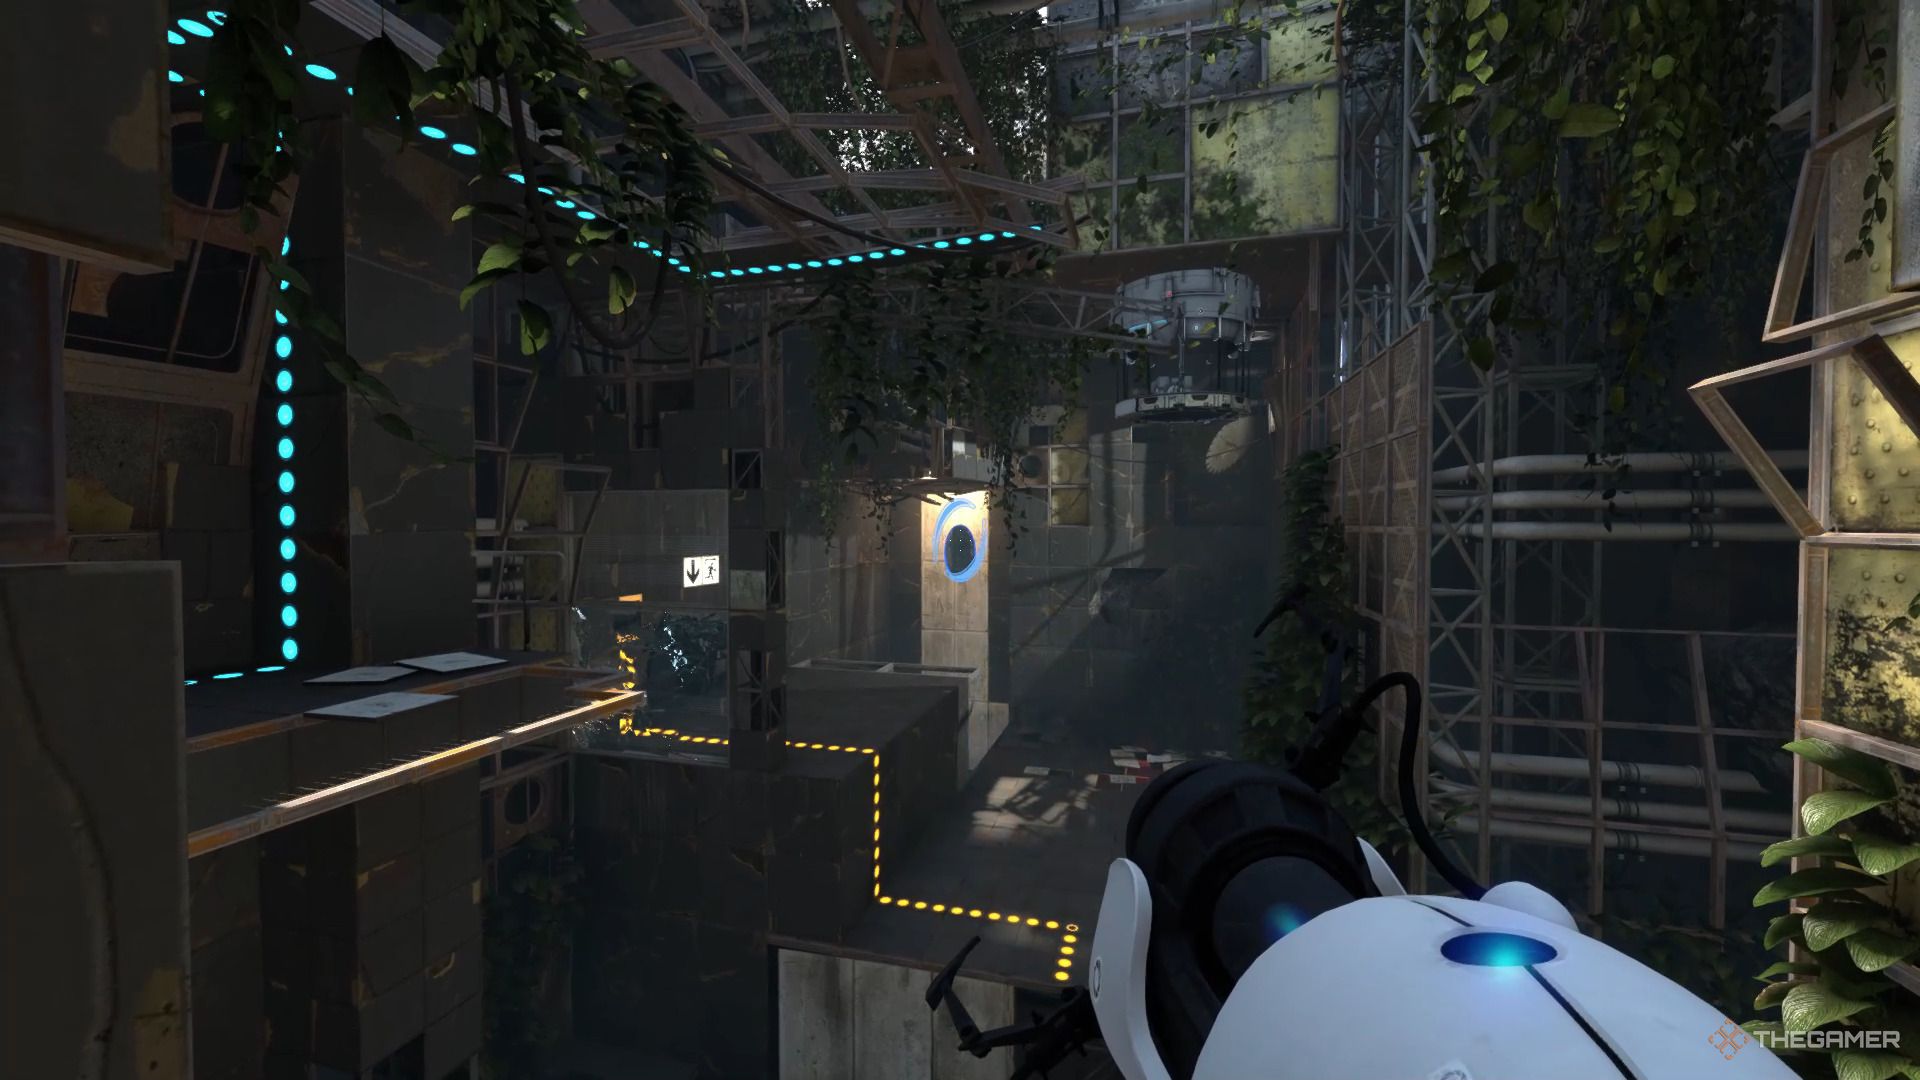 Ein Screenshot von Portal Revolution, der den Spielercharakter zeigt, wie er mit der Portalpistole von oben auf ein blaues Portal zielt.